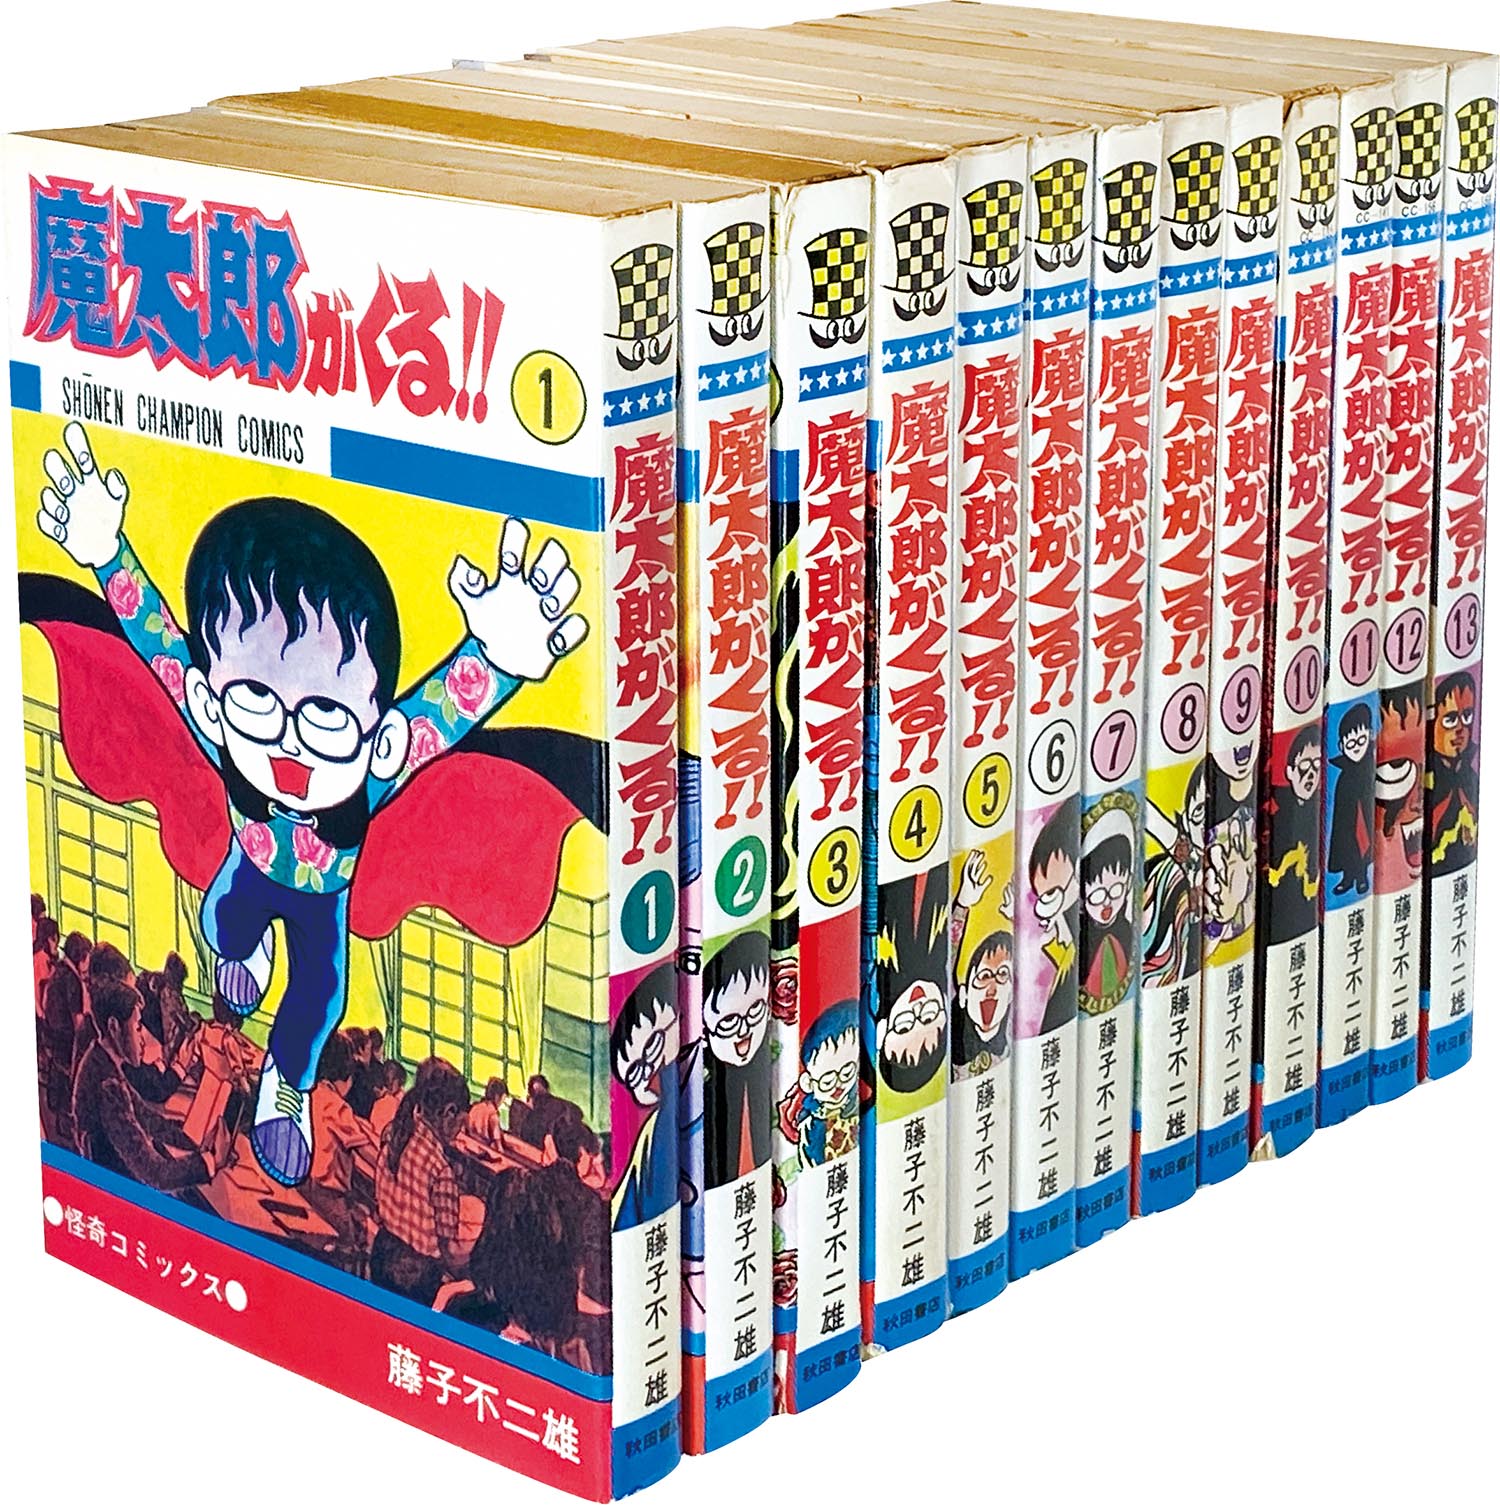 8014 少年チャンピオンコミックス 藤子不二雄 魔太郎がくる 全13巻初版セット